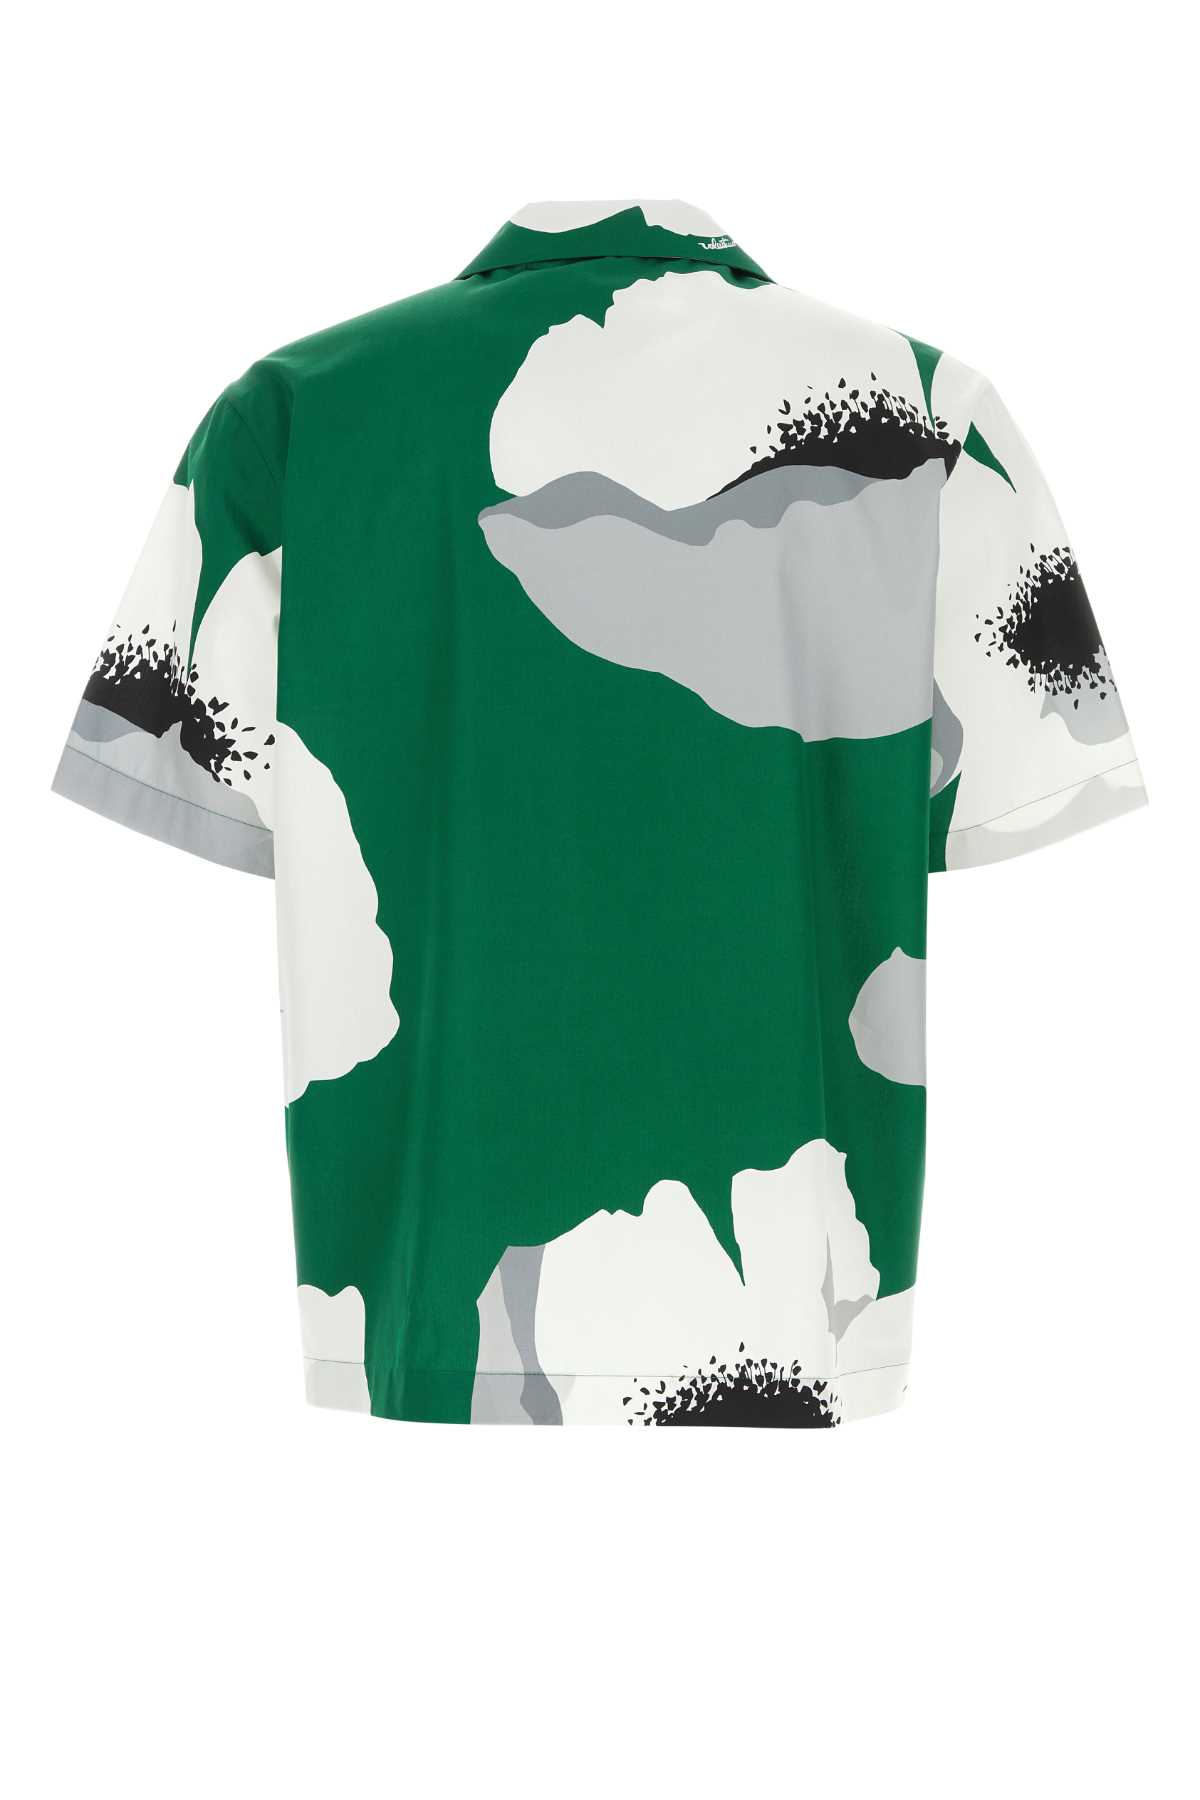 Valentino Printed Cotton Shirt In Smeraldogrigio